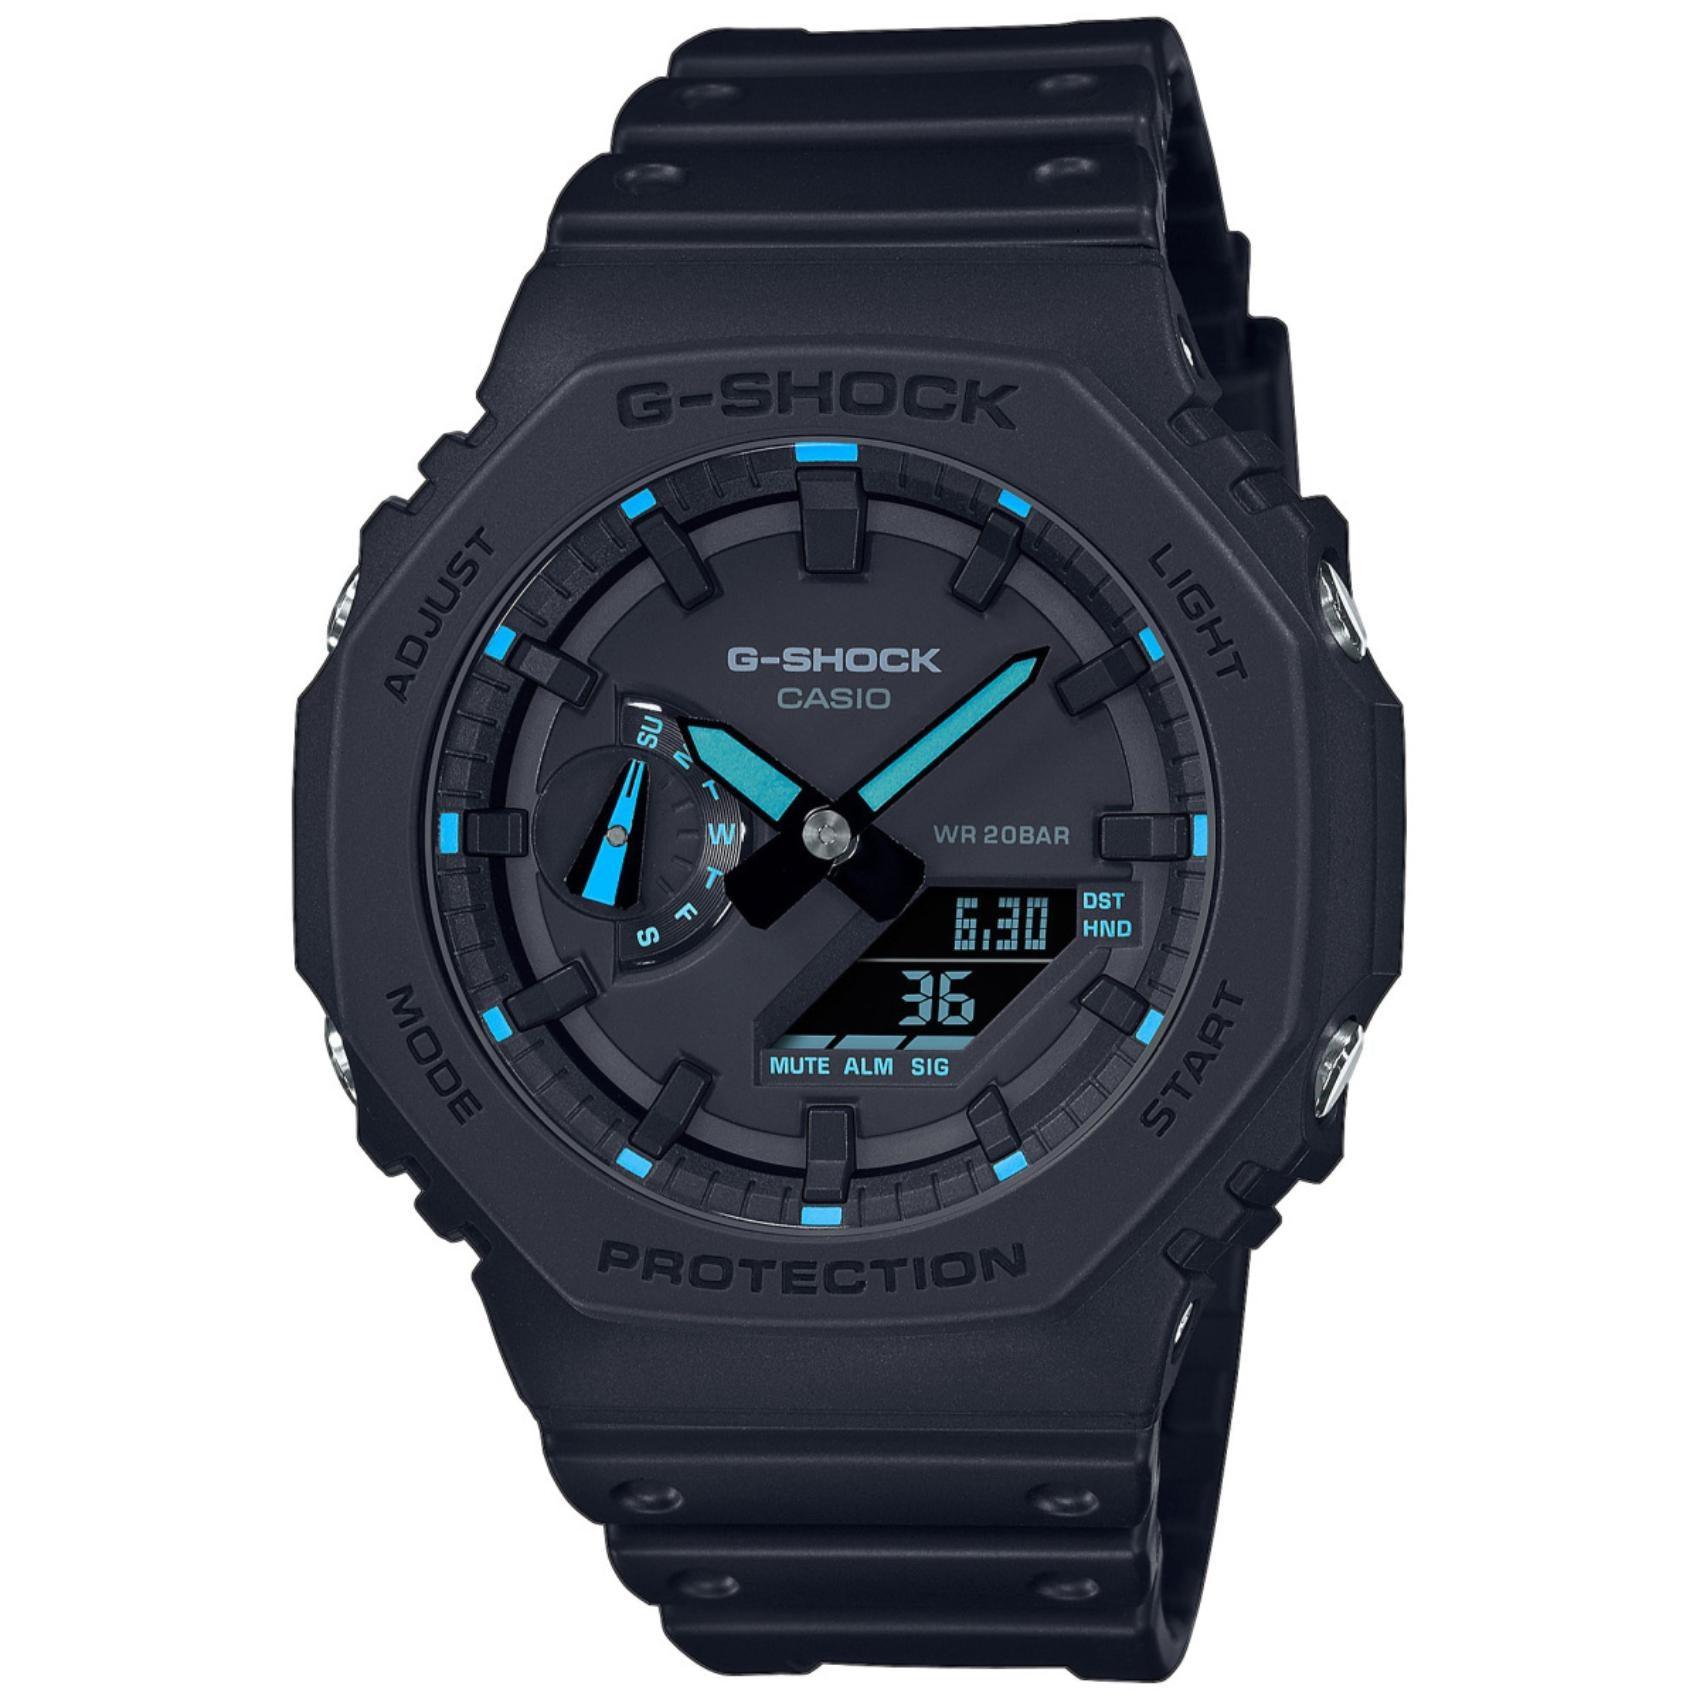 Ρολόι χρονογράφος Casio G-Shock GA-2100-1A2ER με μαύρο καουτσούκ λουράκι, μαύρο καντράν σε οκτάγωνο σχημα με ψηφιακή ένδειξη και στεγανότητα 20ATM-200Μ.